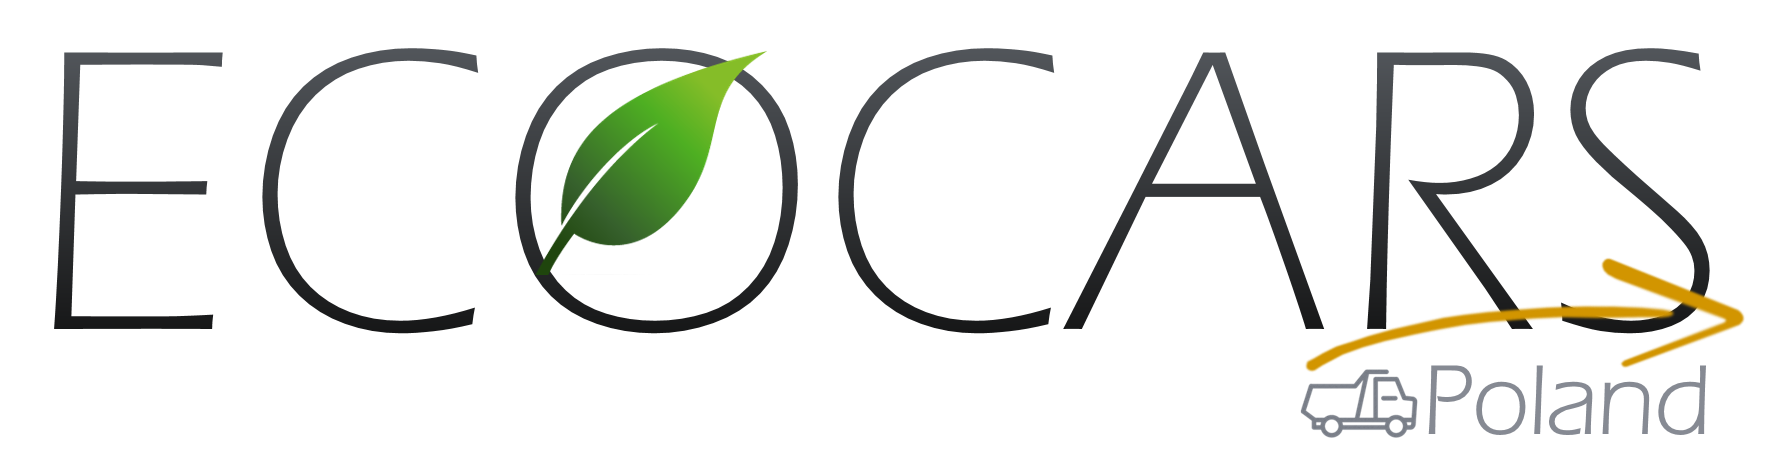 cropped logotyp Ecocars Poland - Pompa recyklingu CC 2020